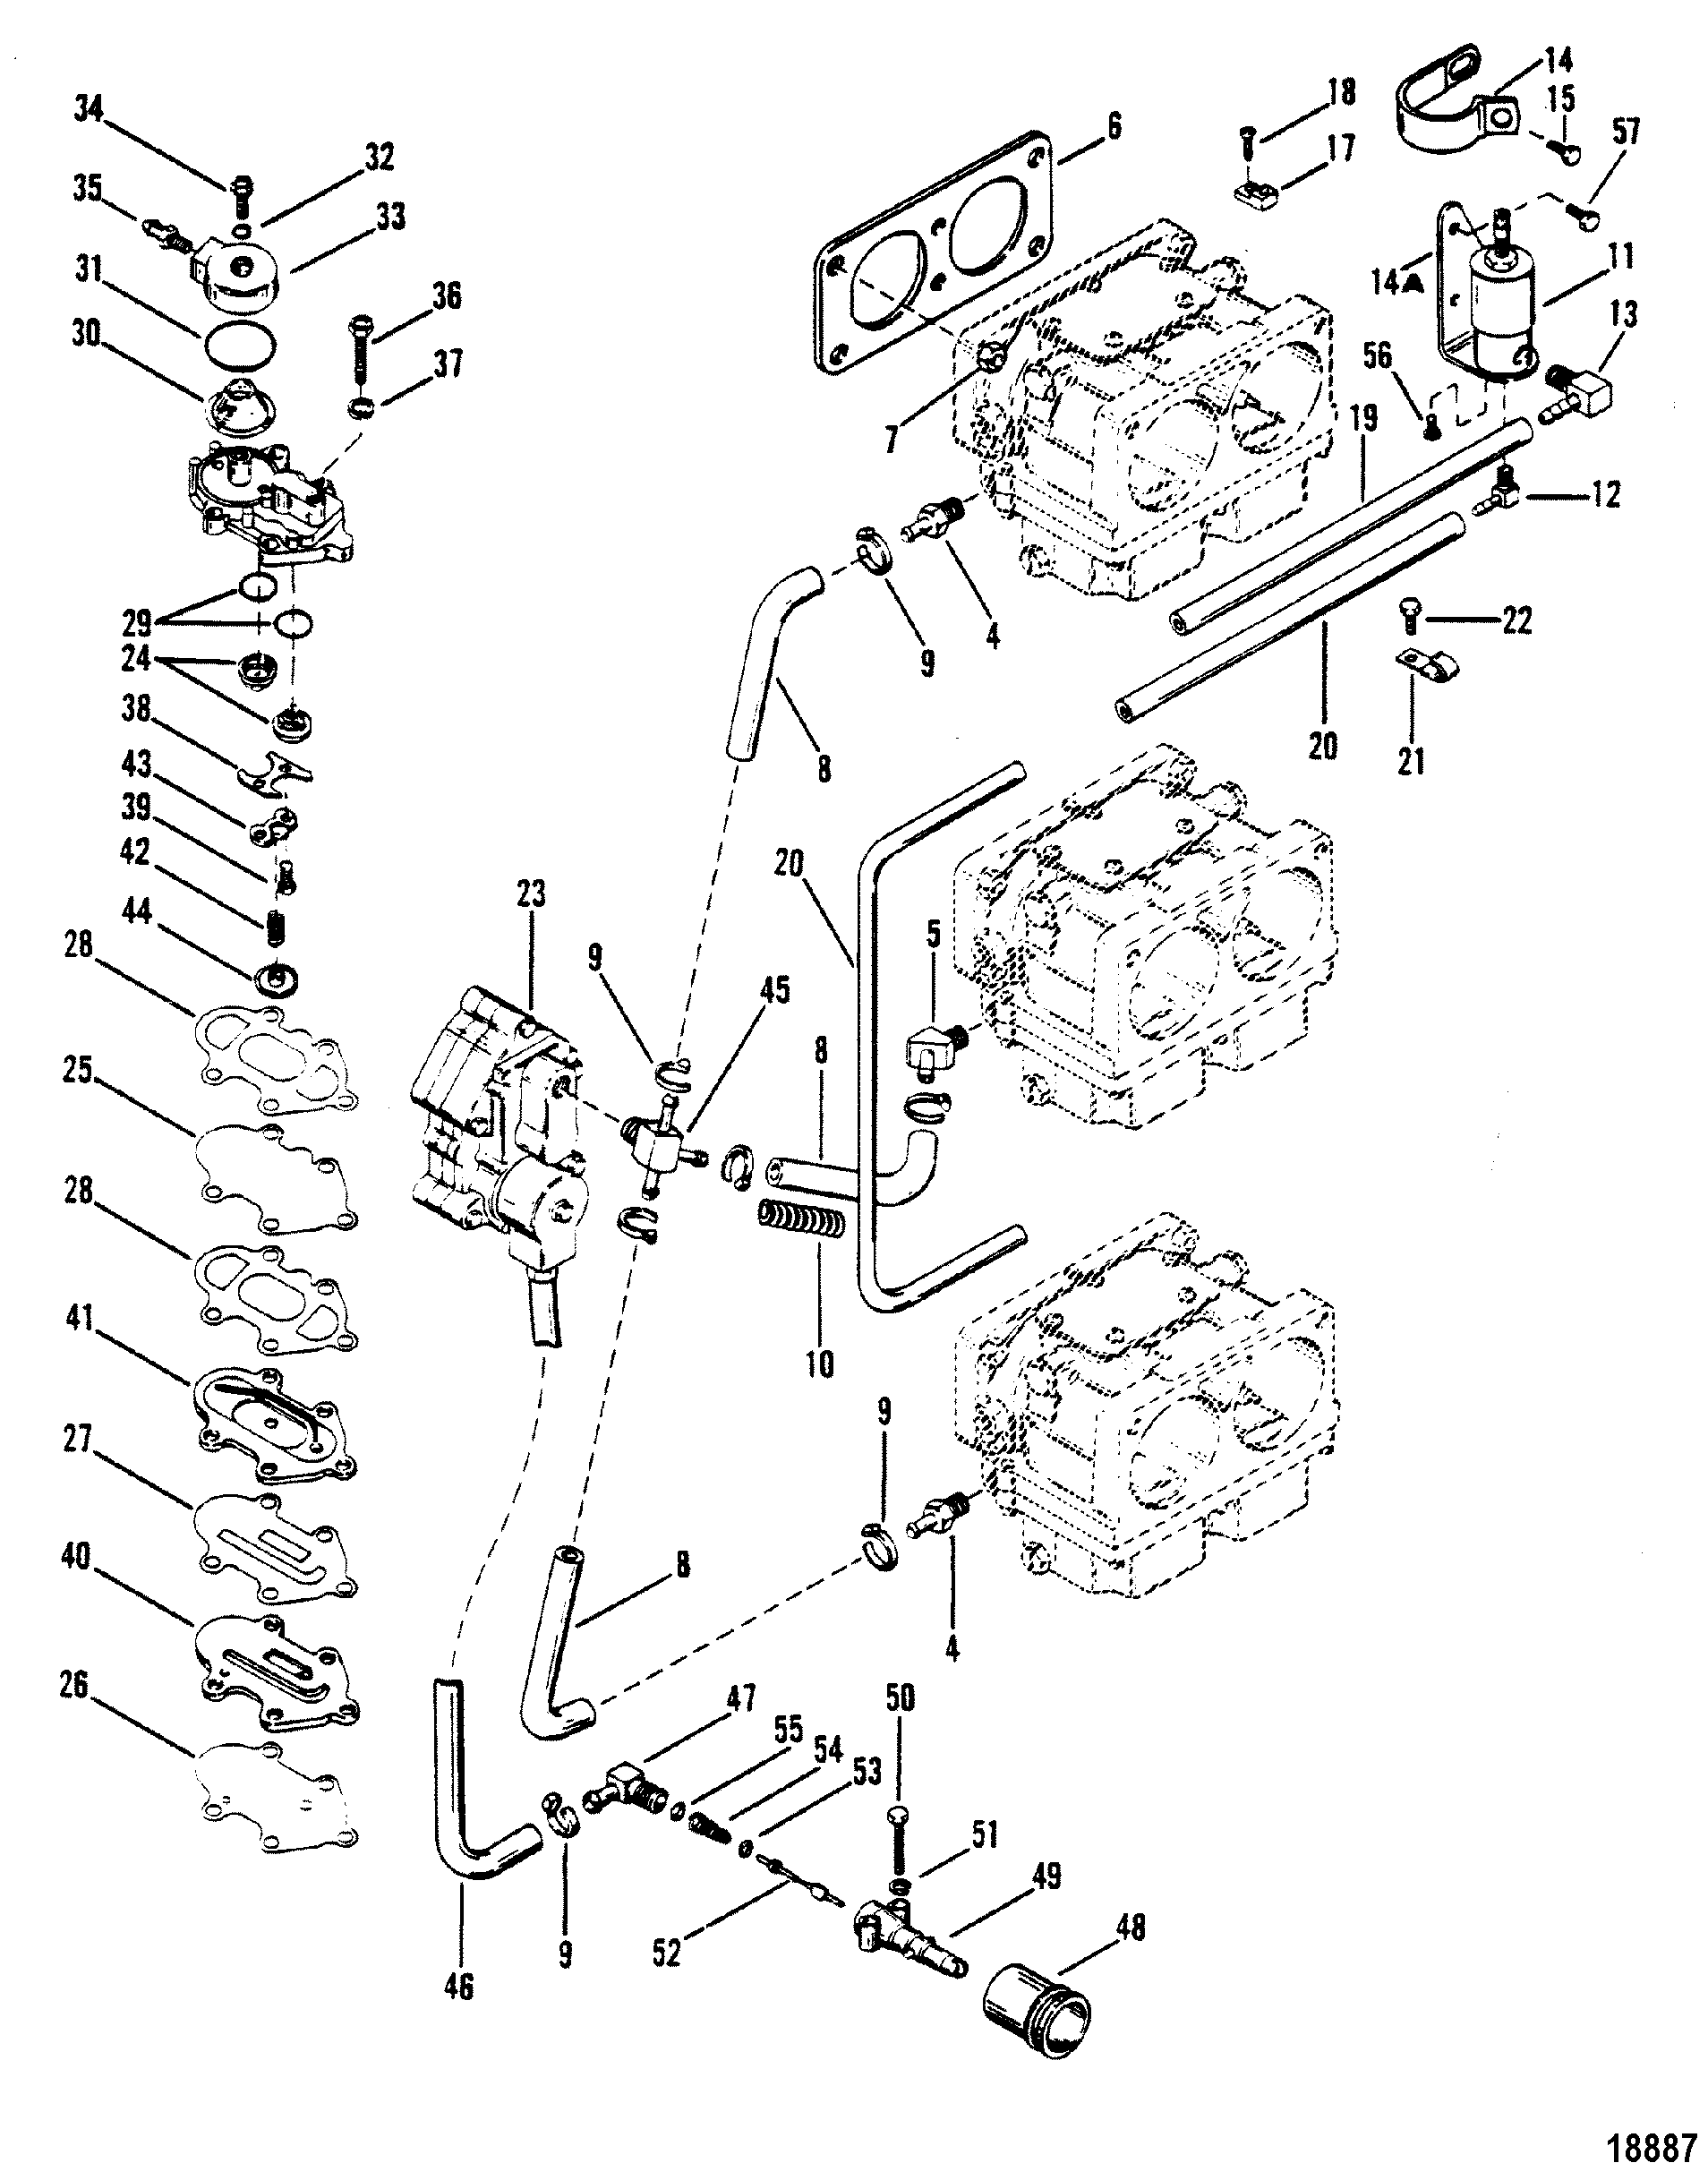 Fuel Pump and Carburetor